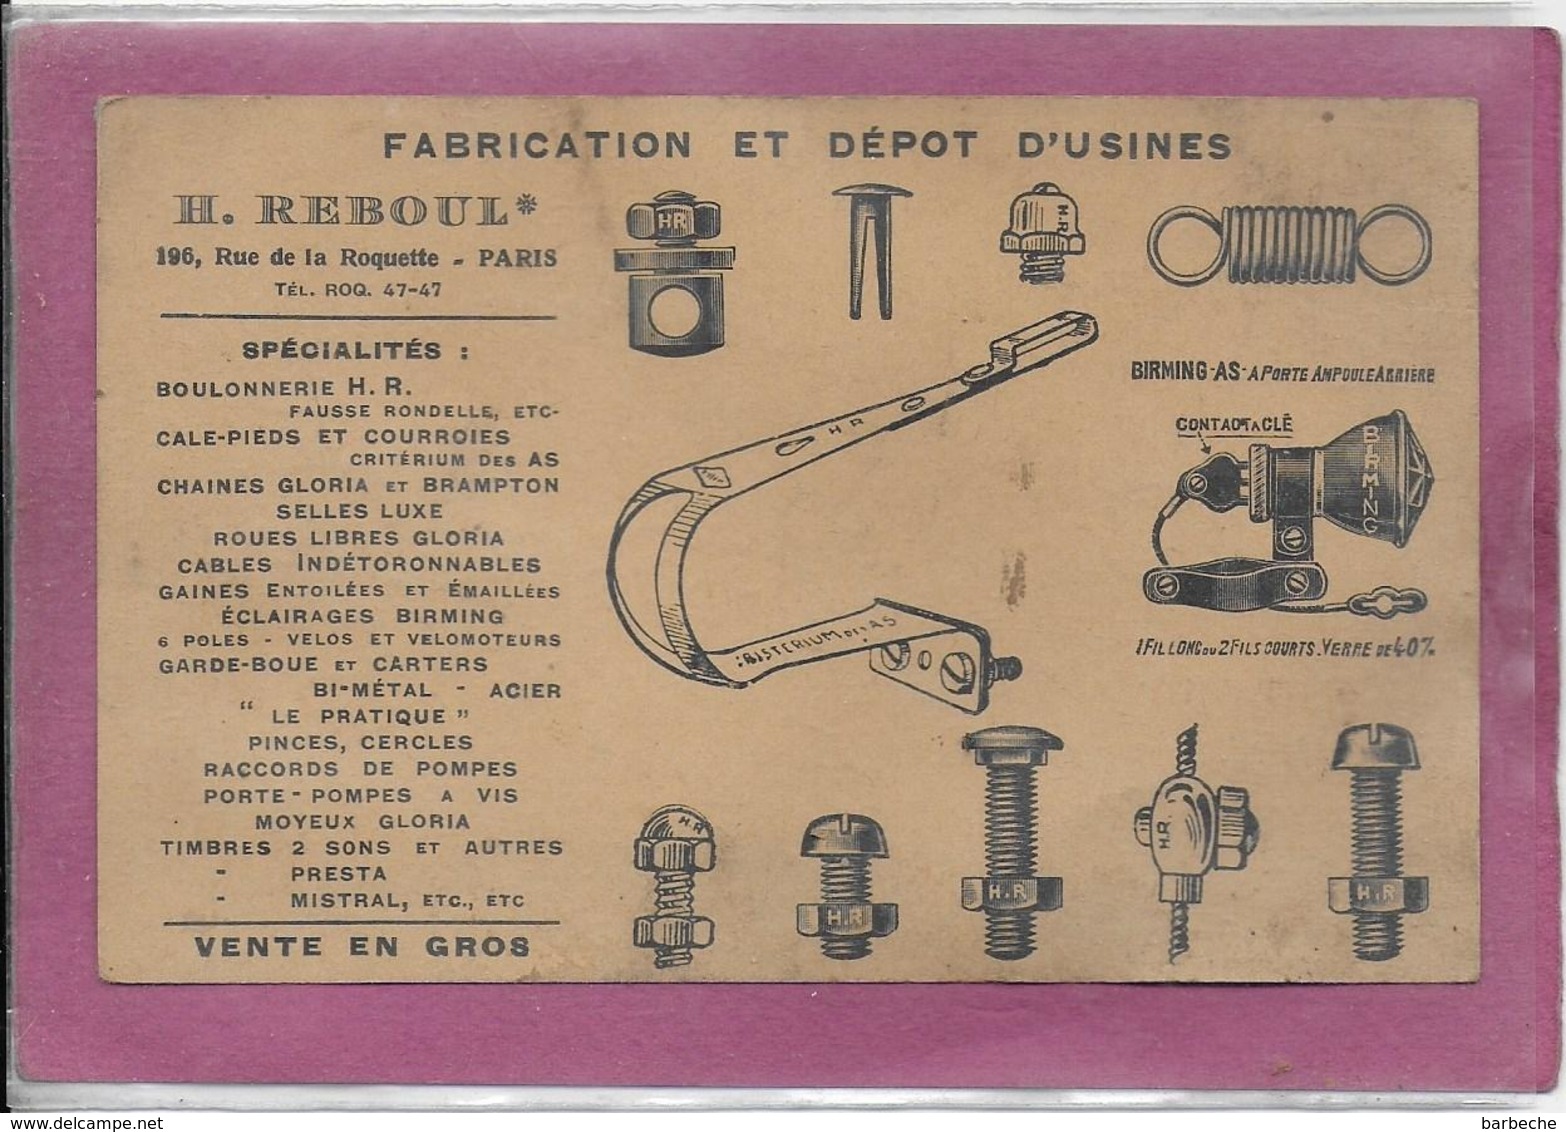 Fabrication Et Dépot D' Usine  H. REBOUL  196, Rue De La Roquette PARIS  Spécialités  Boulonnerie ... - Matériel Et Accessoires